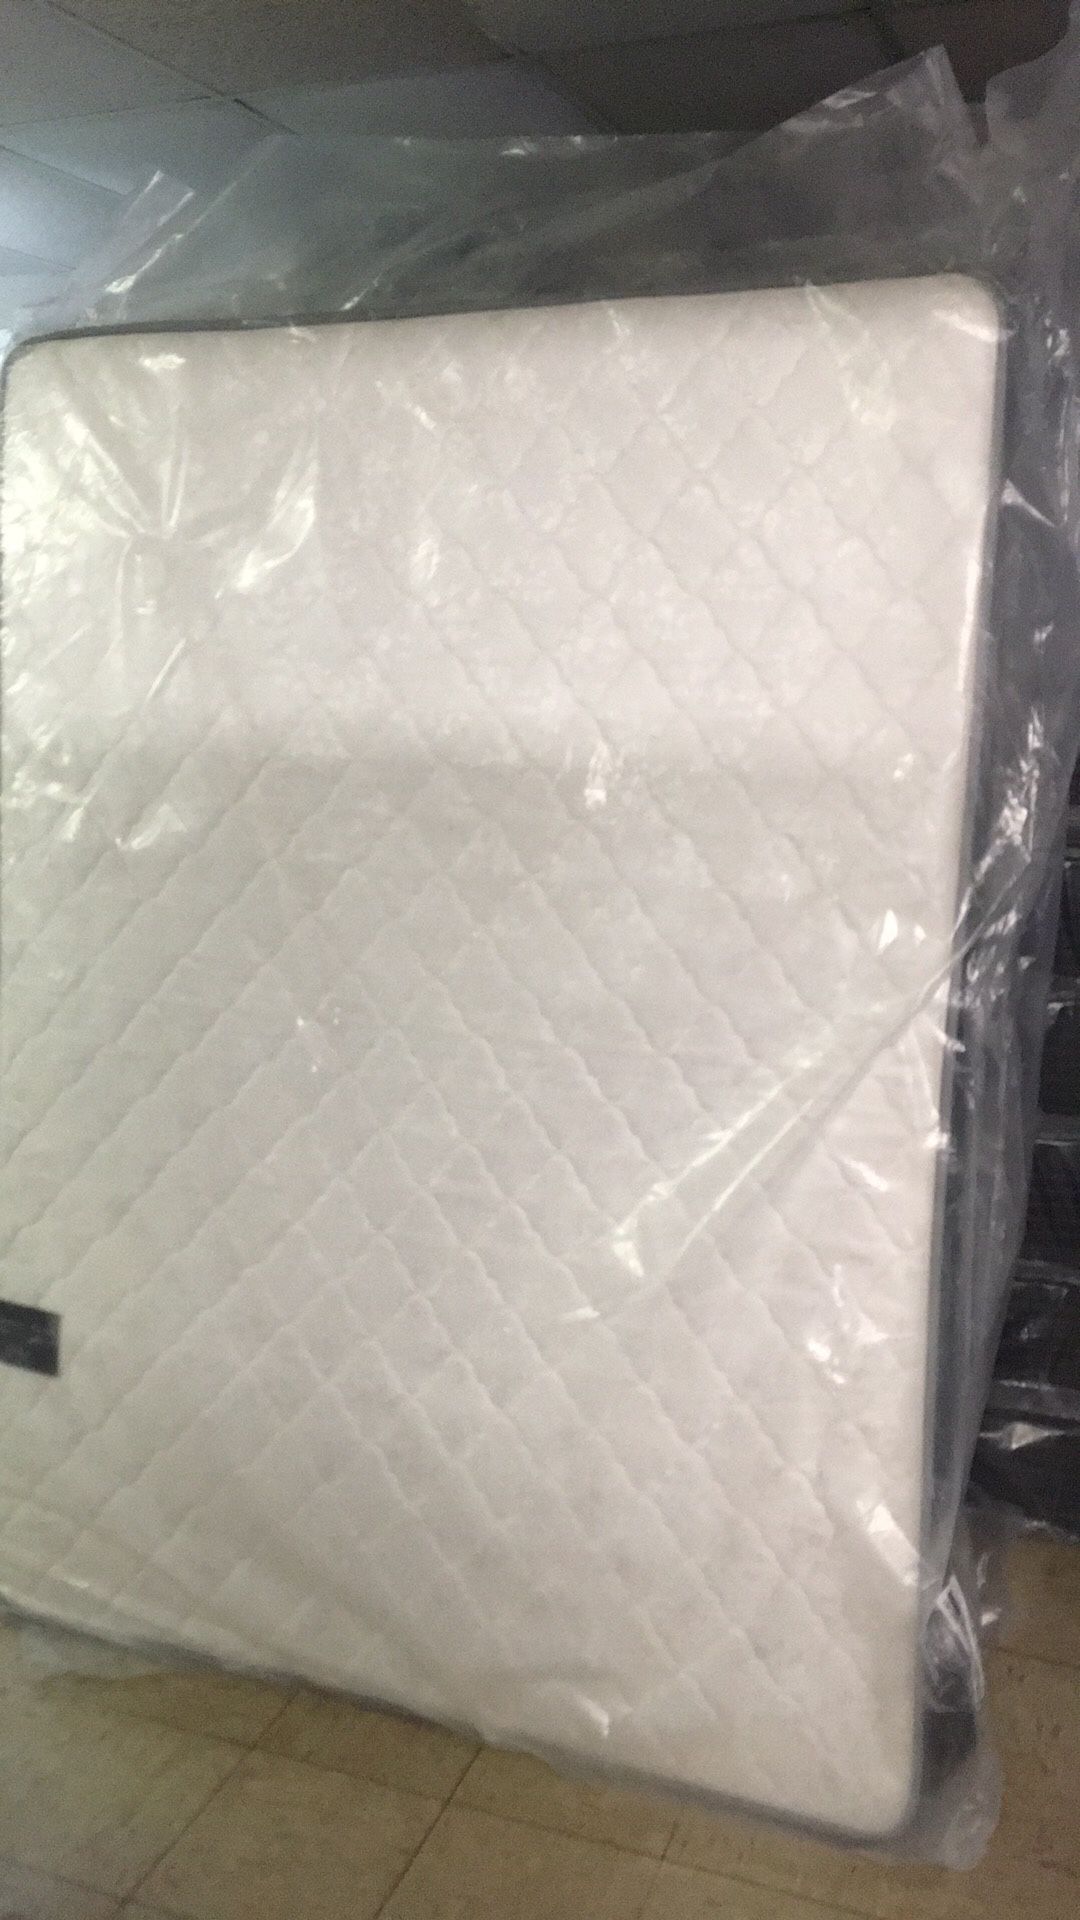 Brand New plush queen size mattress